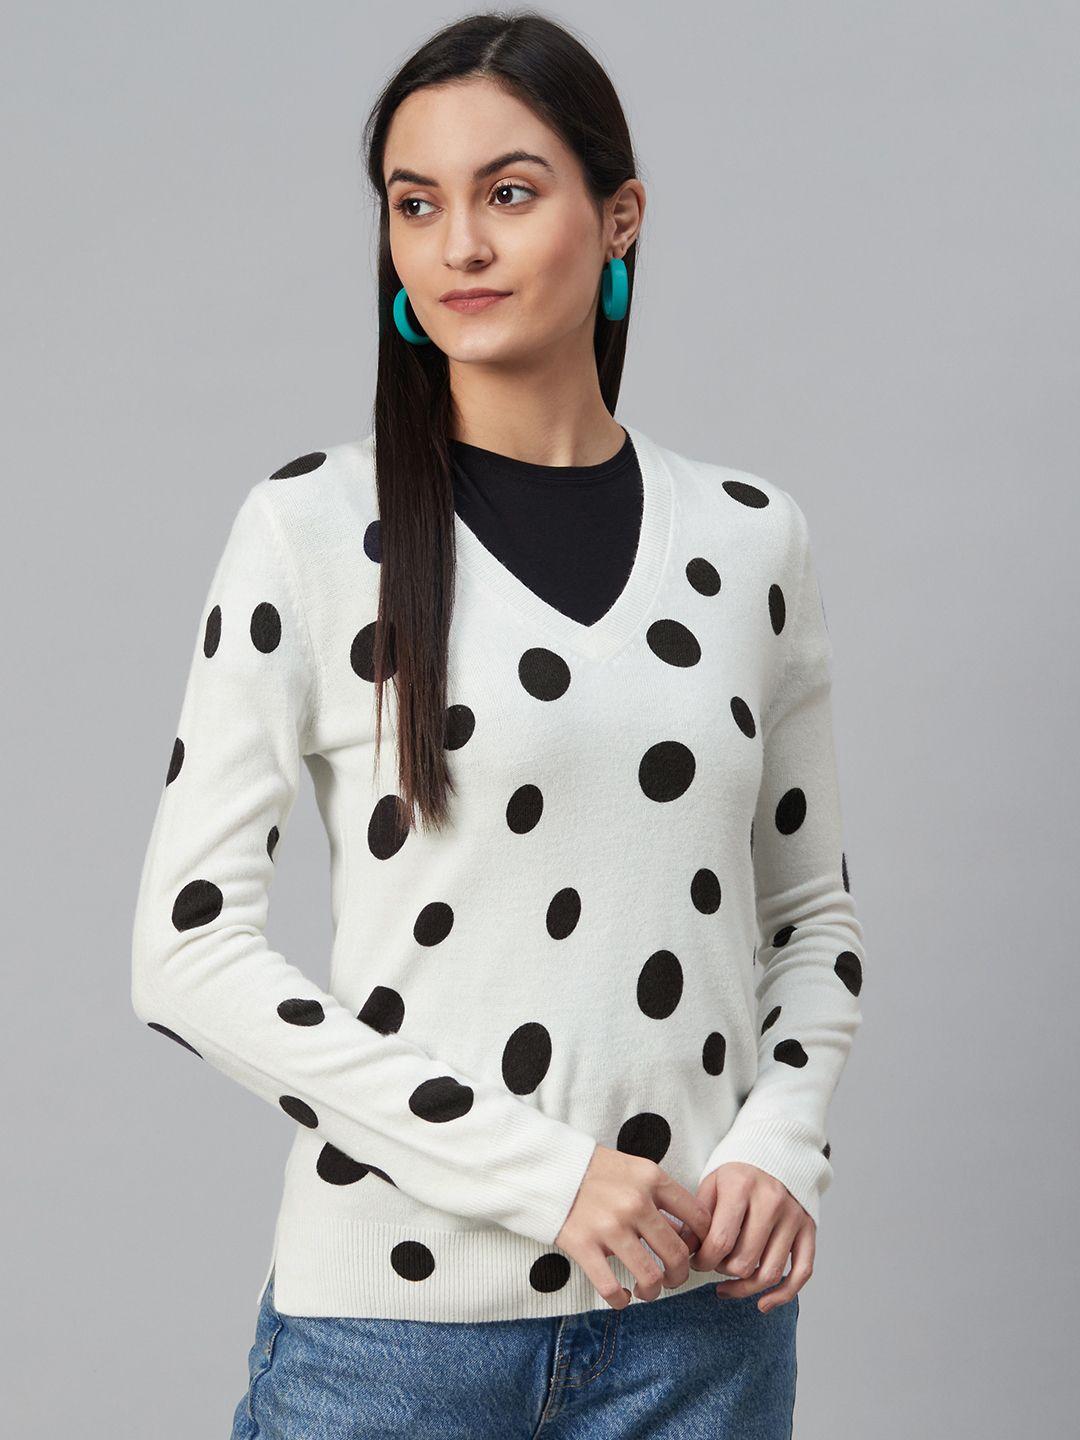 marks & spencer women white & navy blue polka dot print pullover sweater